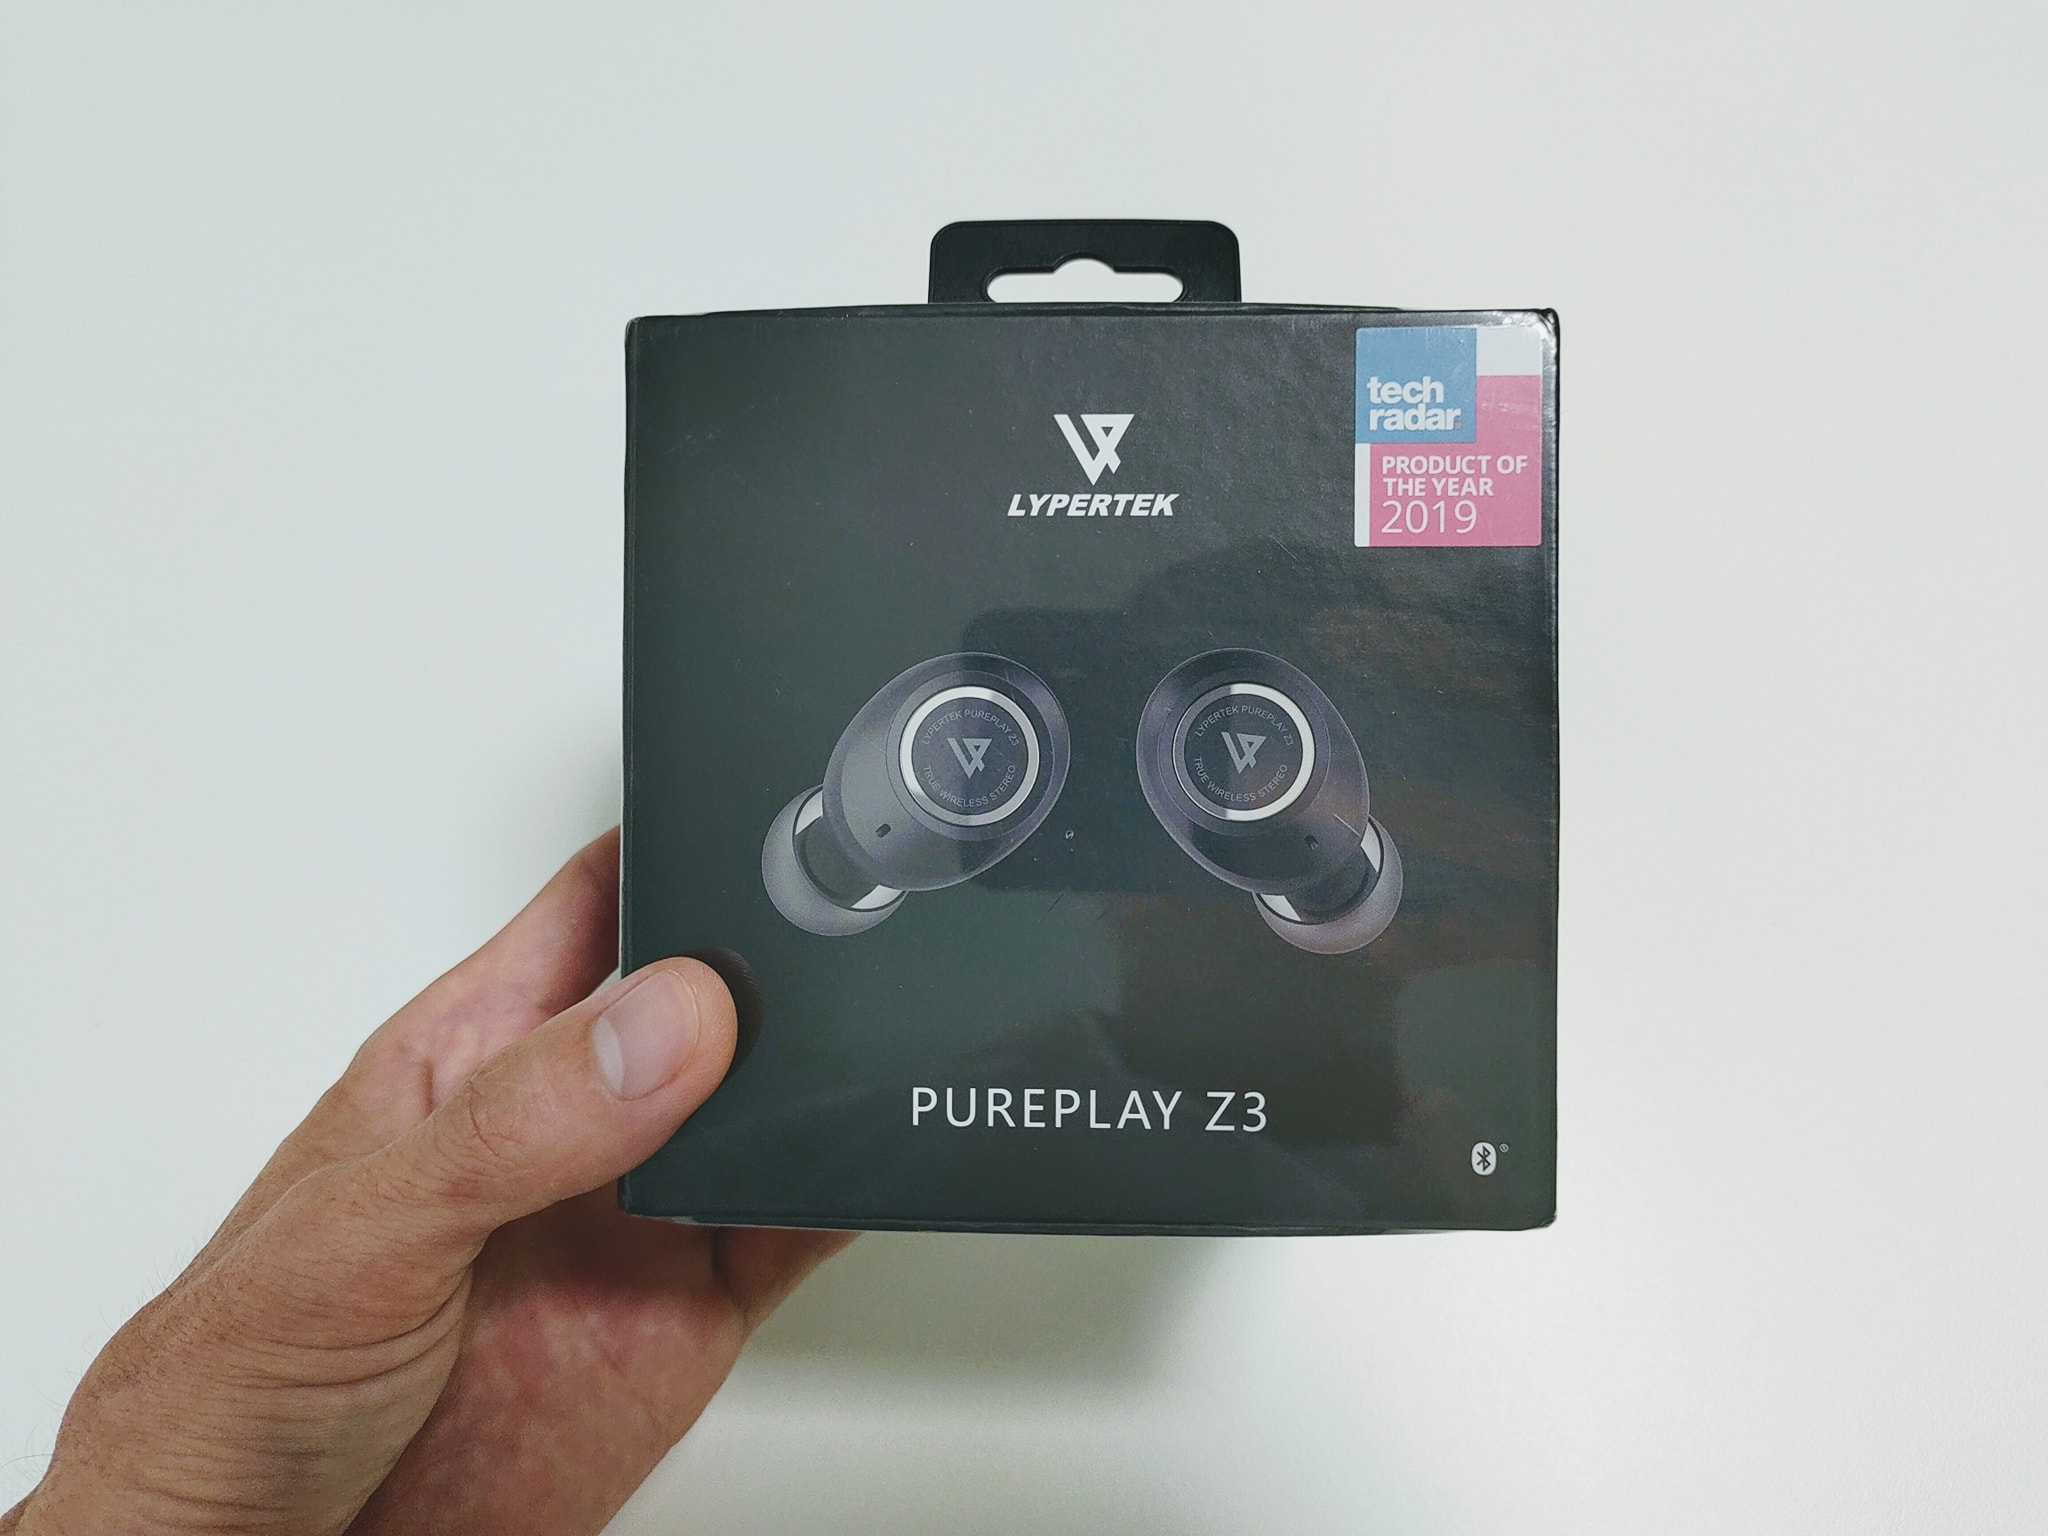 Lypertek PurePlay Z3, anh em đã dùng qua tai nghe hãng này chưa.